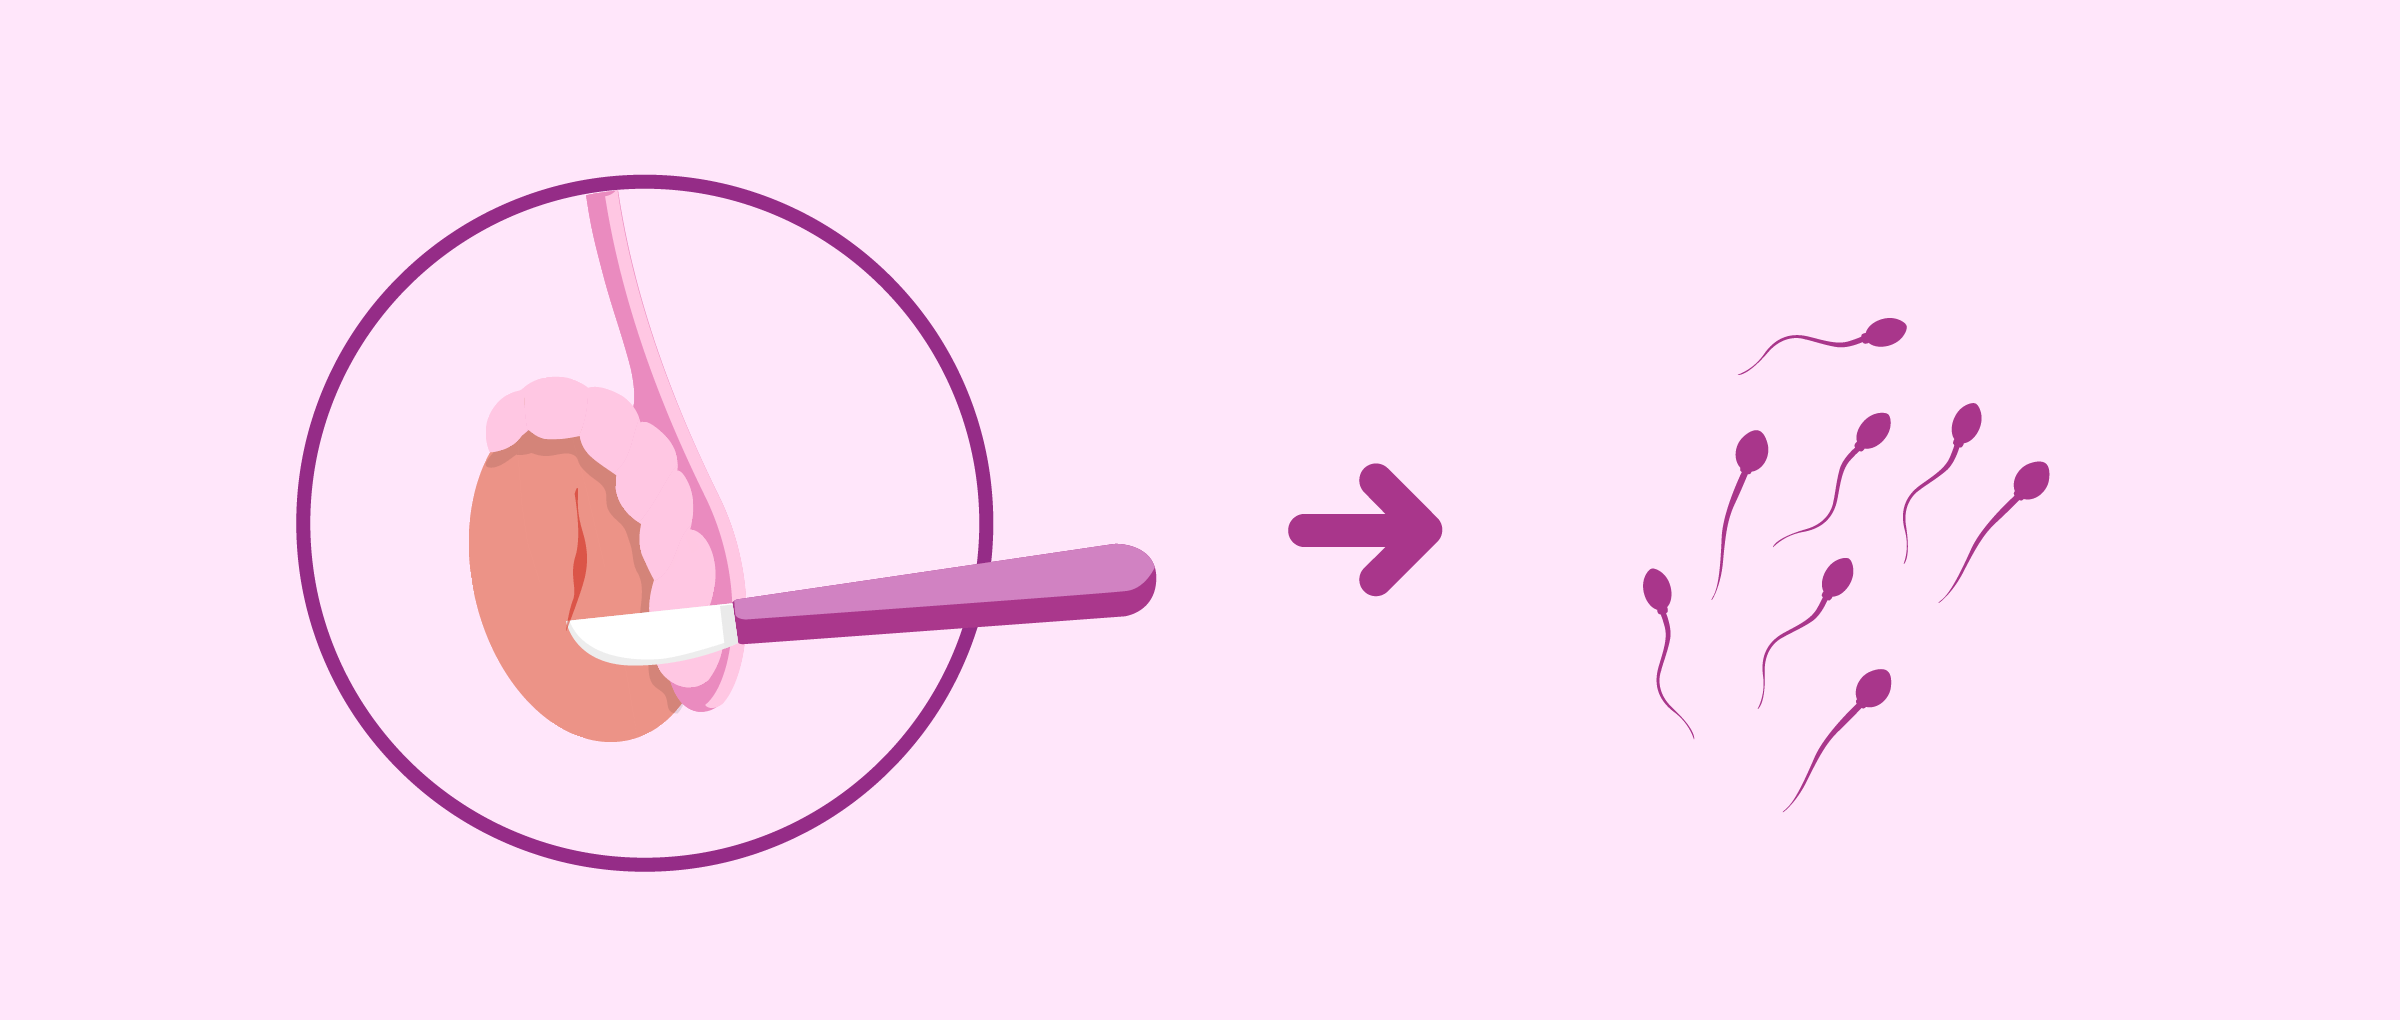 Testicular biopsy to retrieve sperm